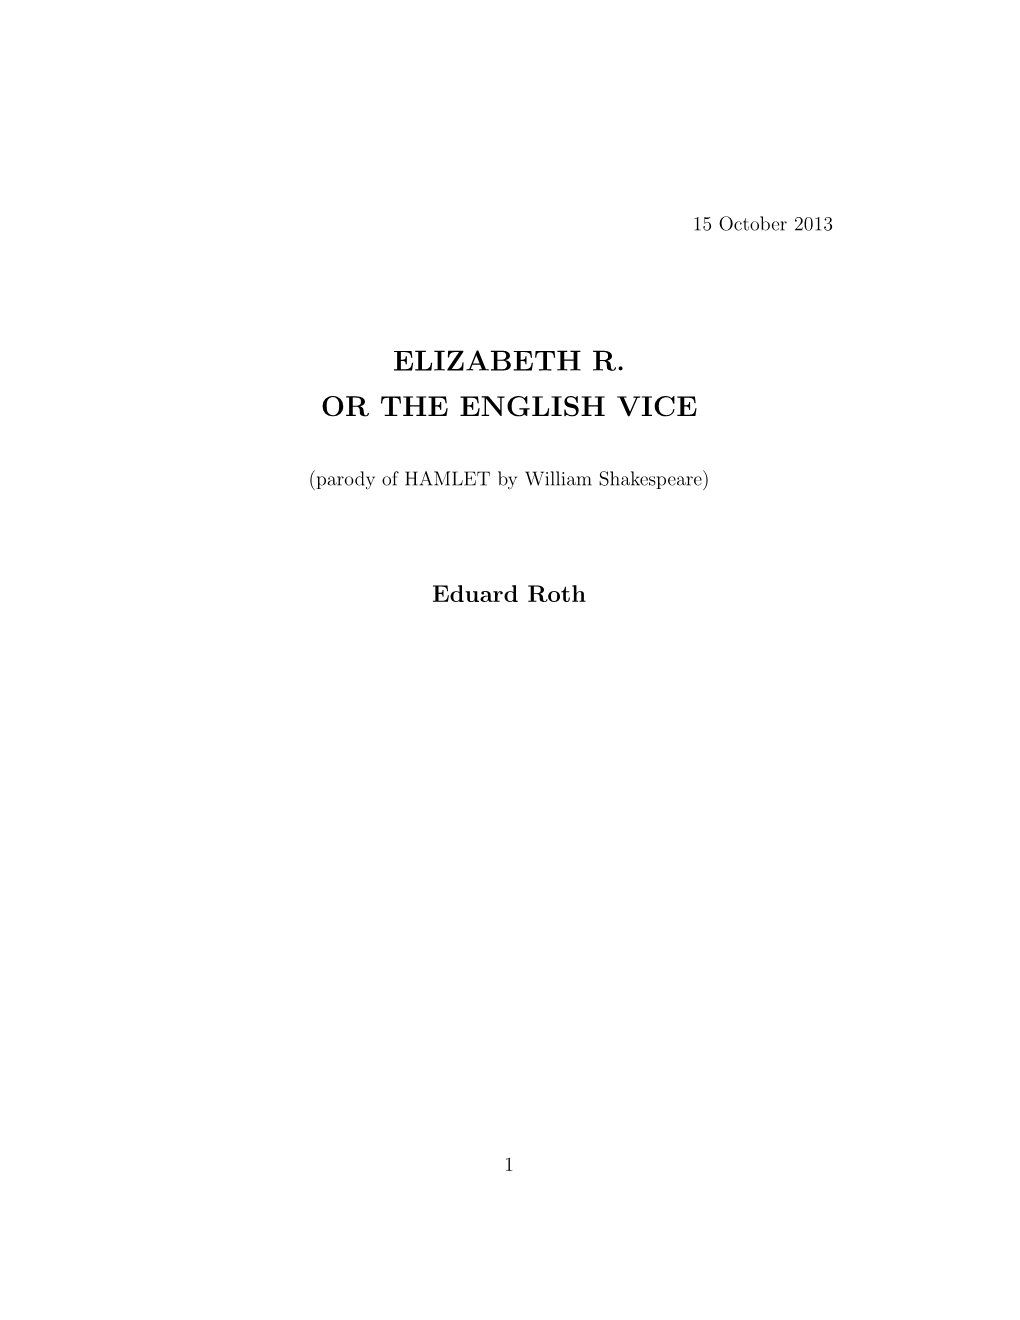 Elizabeth R. Or the English Vice